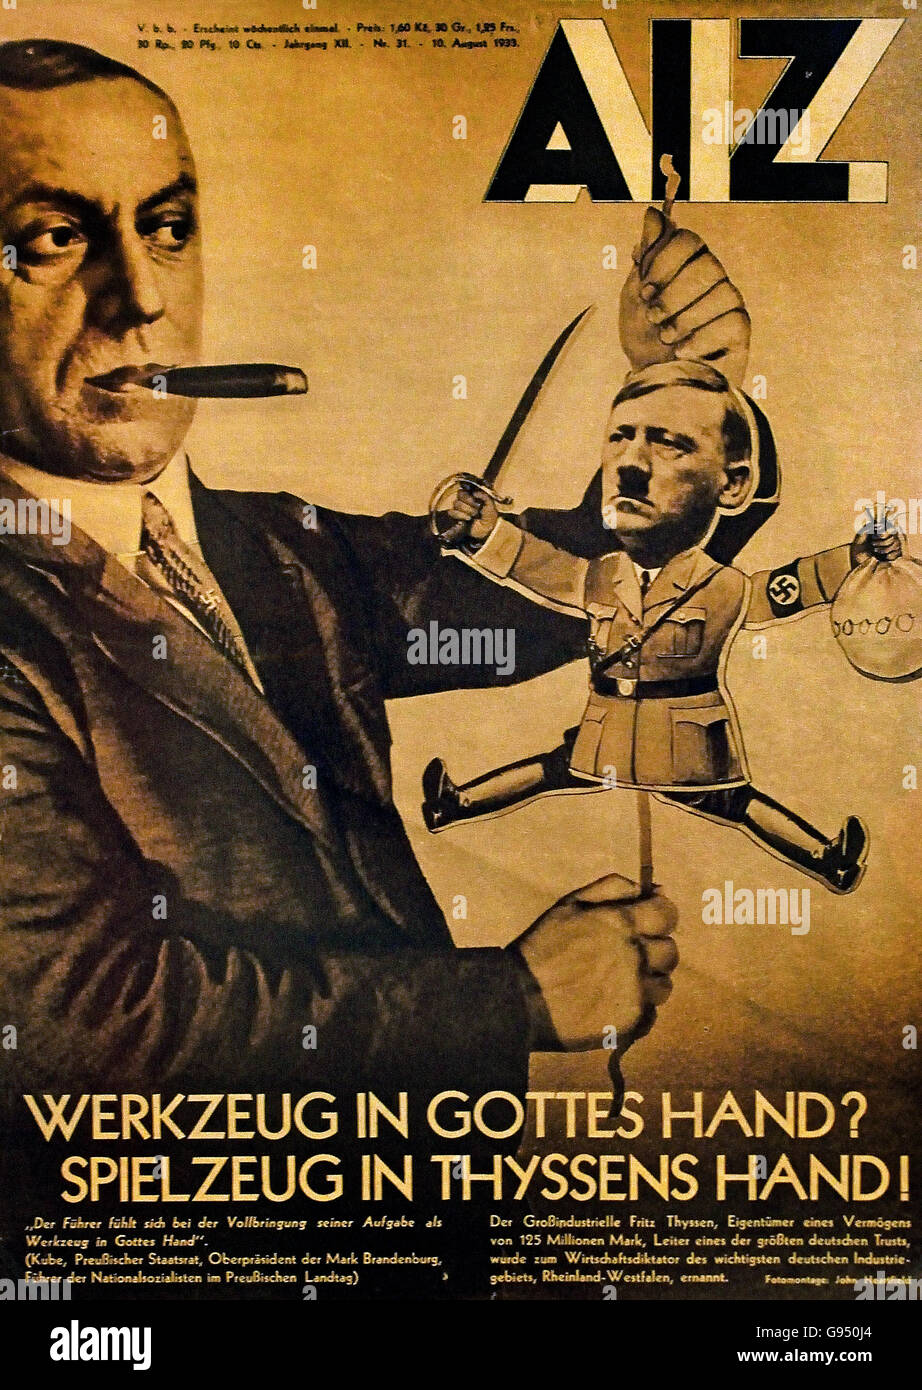 Werkzeug in Gottes Hand Spielzeug in Thyssen Hand - Werkzeug in Gottes Hand Spielzeug in Thyssens Hand A.I.Z. auf dem Bündnis der Firma Thyssen mit NSDAP Berlin Nazi-Deutschland Stockfoto